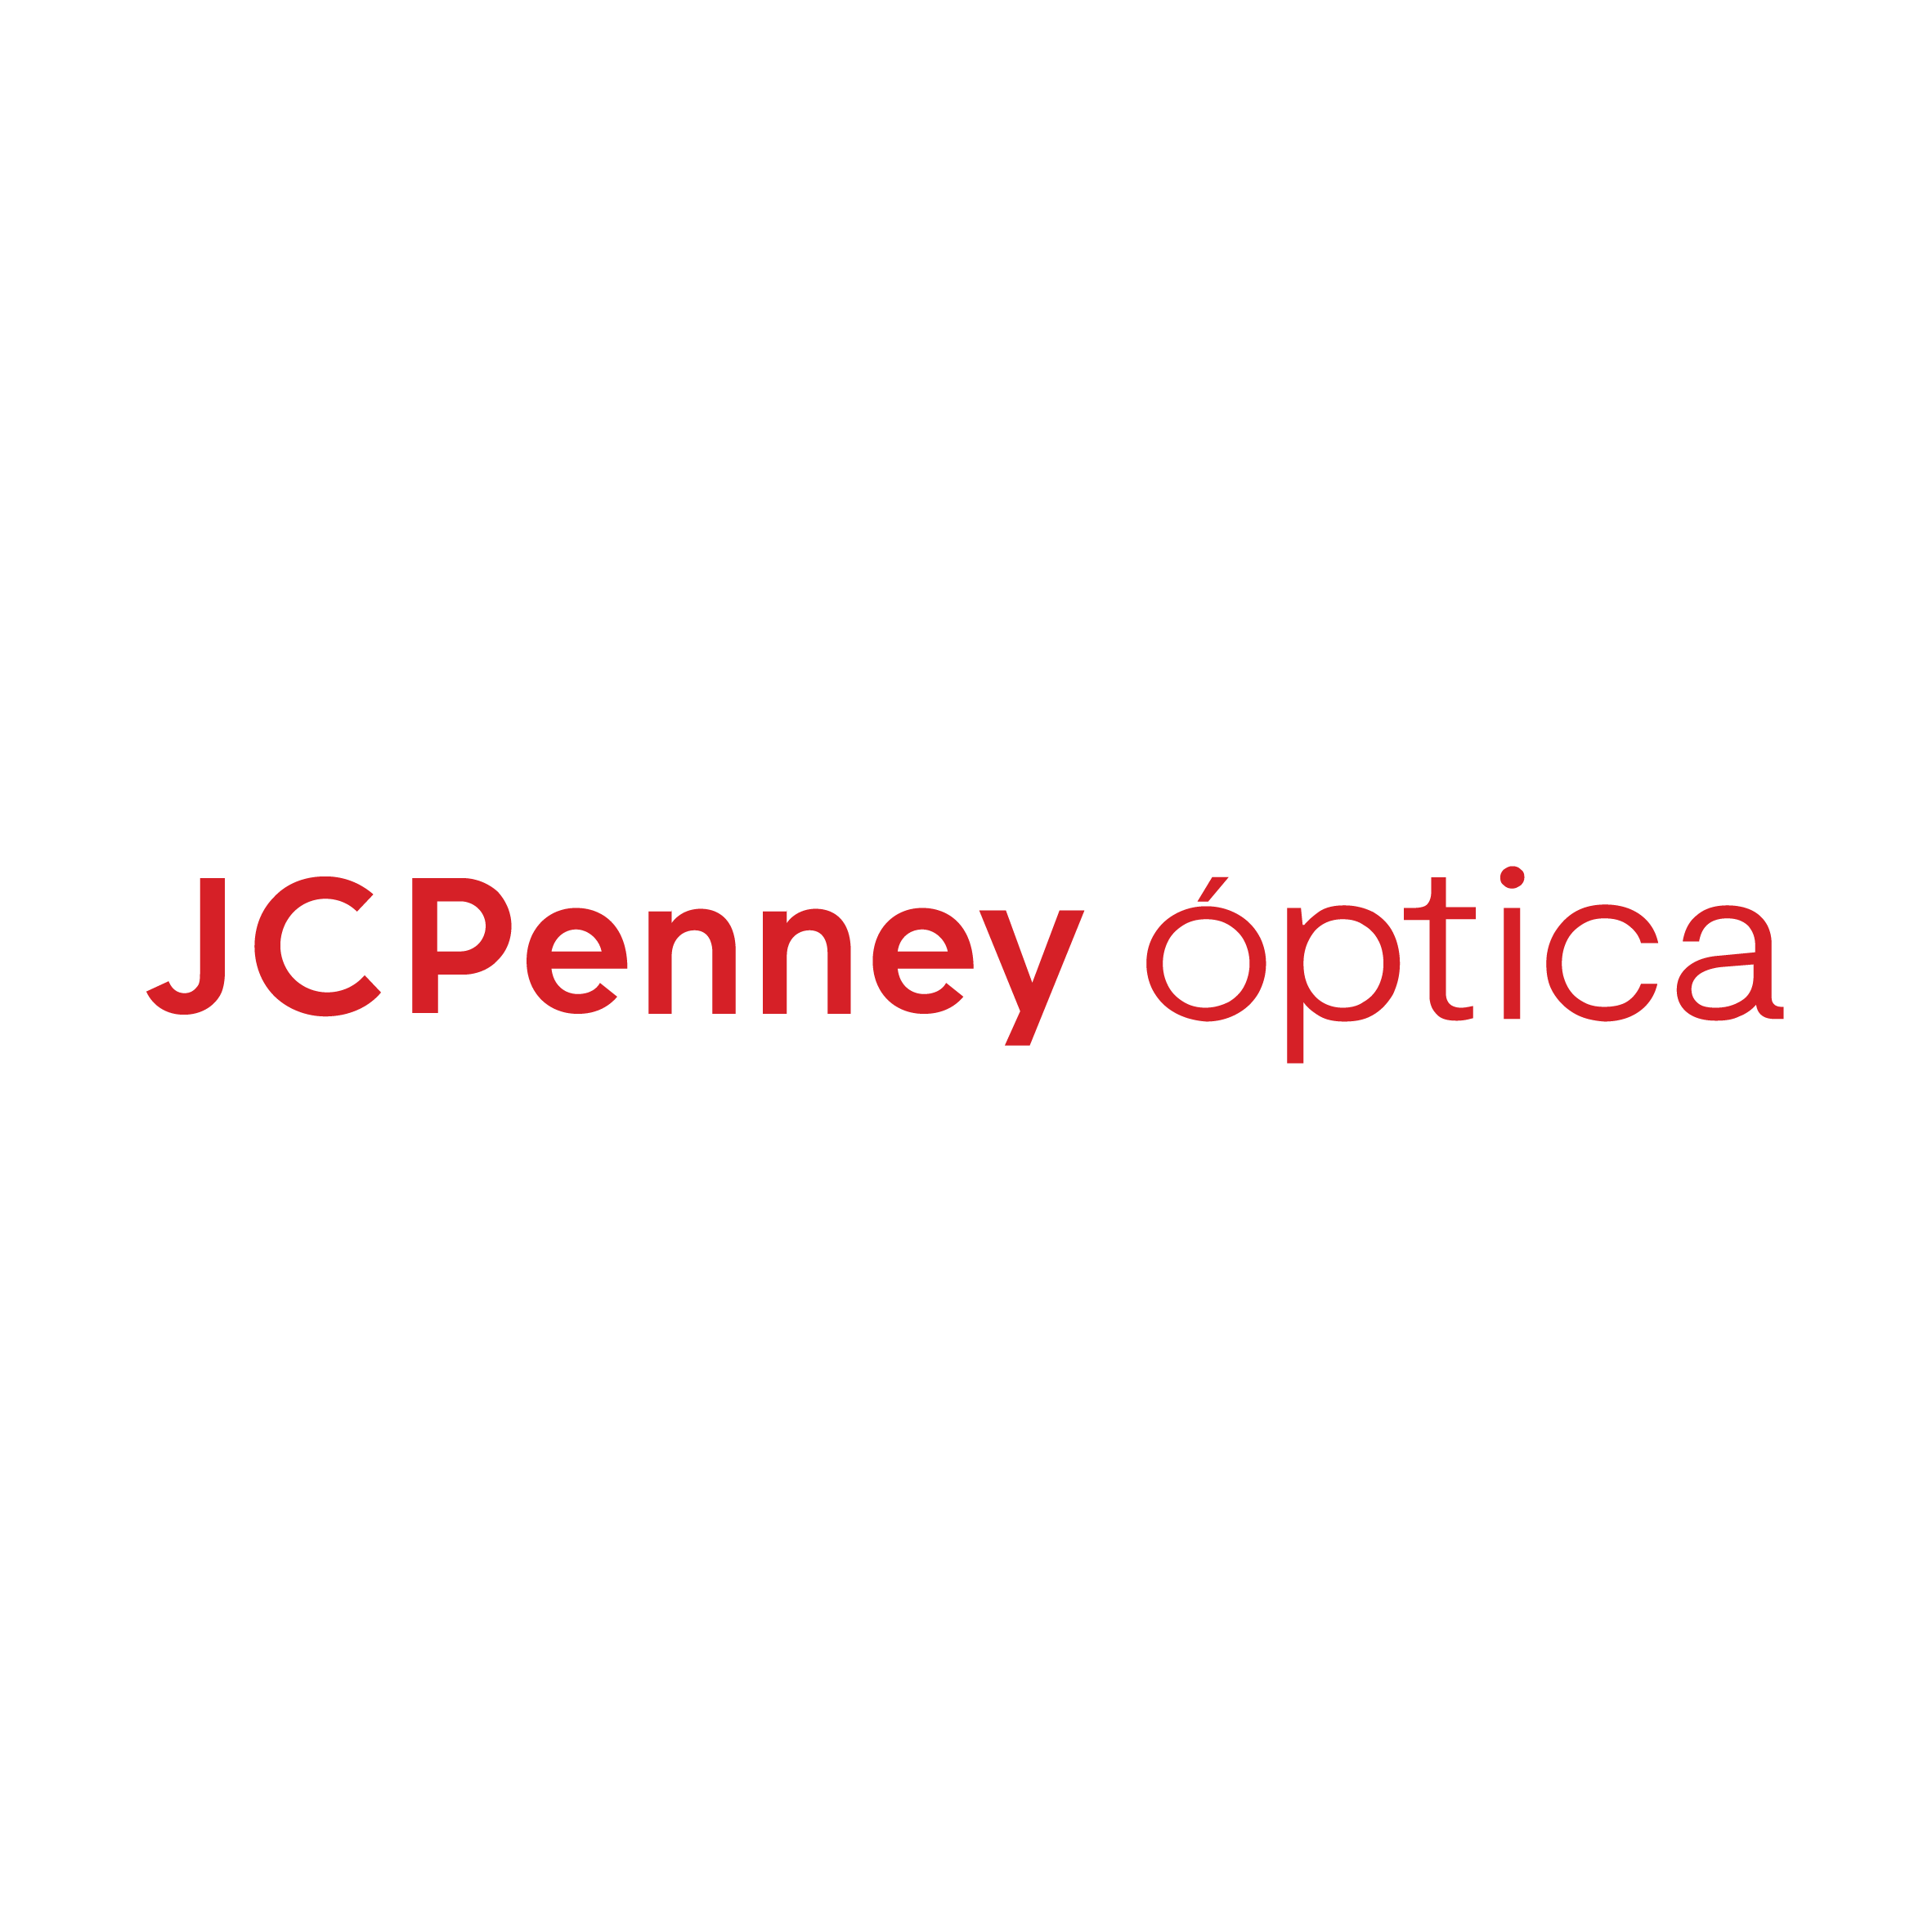 JC Penney Óptica Logo